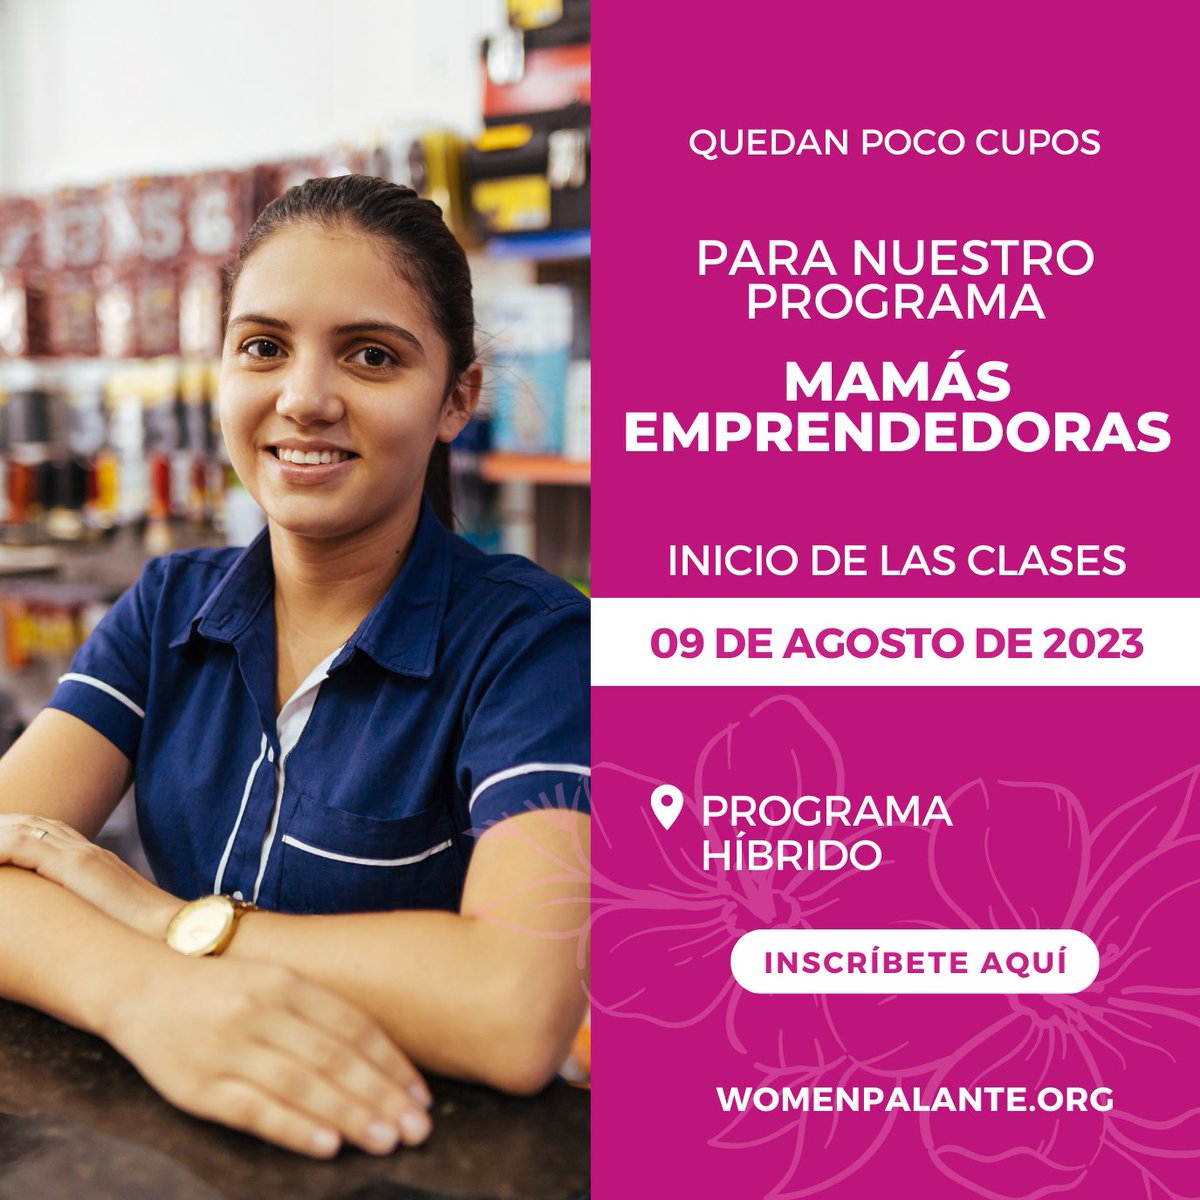 Mamás Emprendedoras está pronto a comenzar.
¿No te has inscrito? puedes hacerlo aquí 👇.

womenpalante.org/mompreneurs/